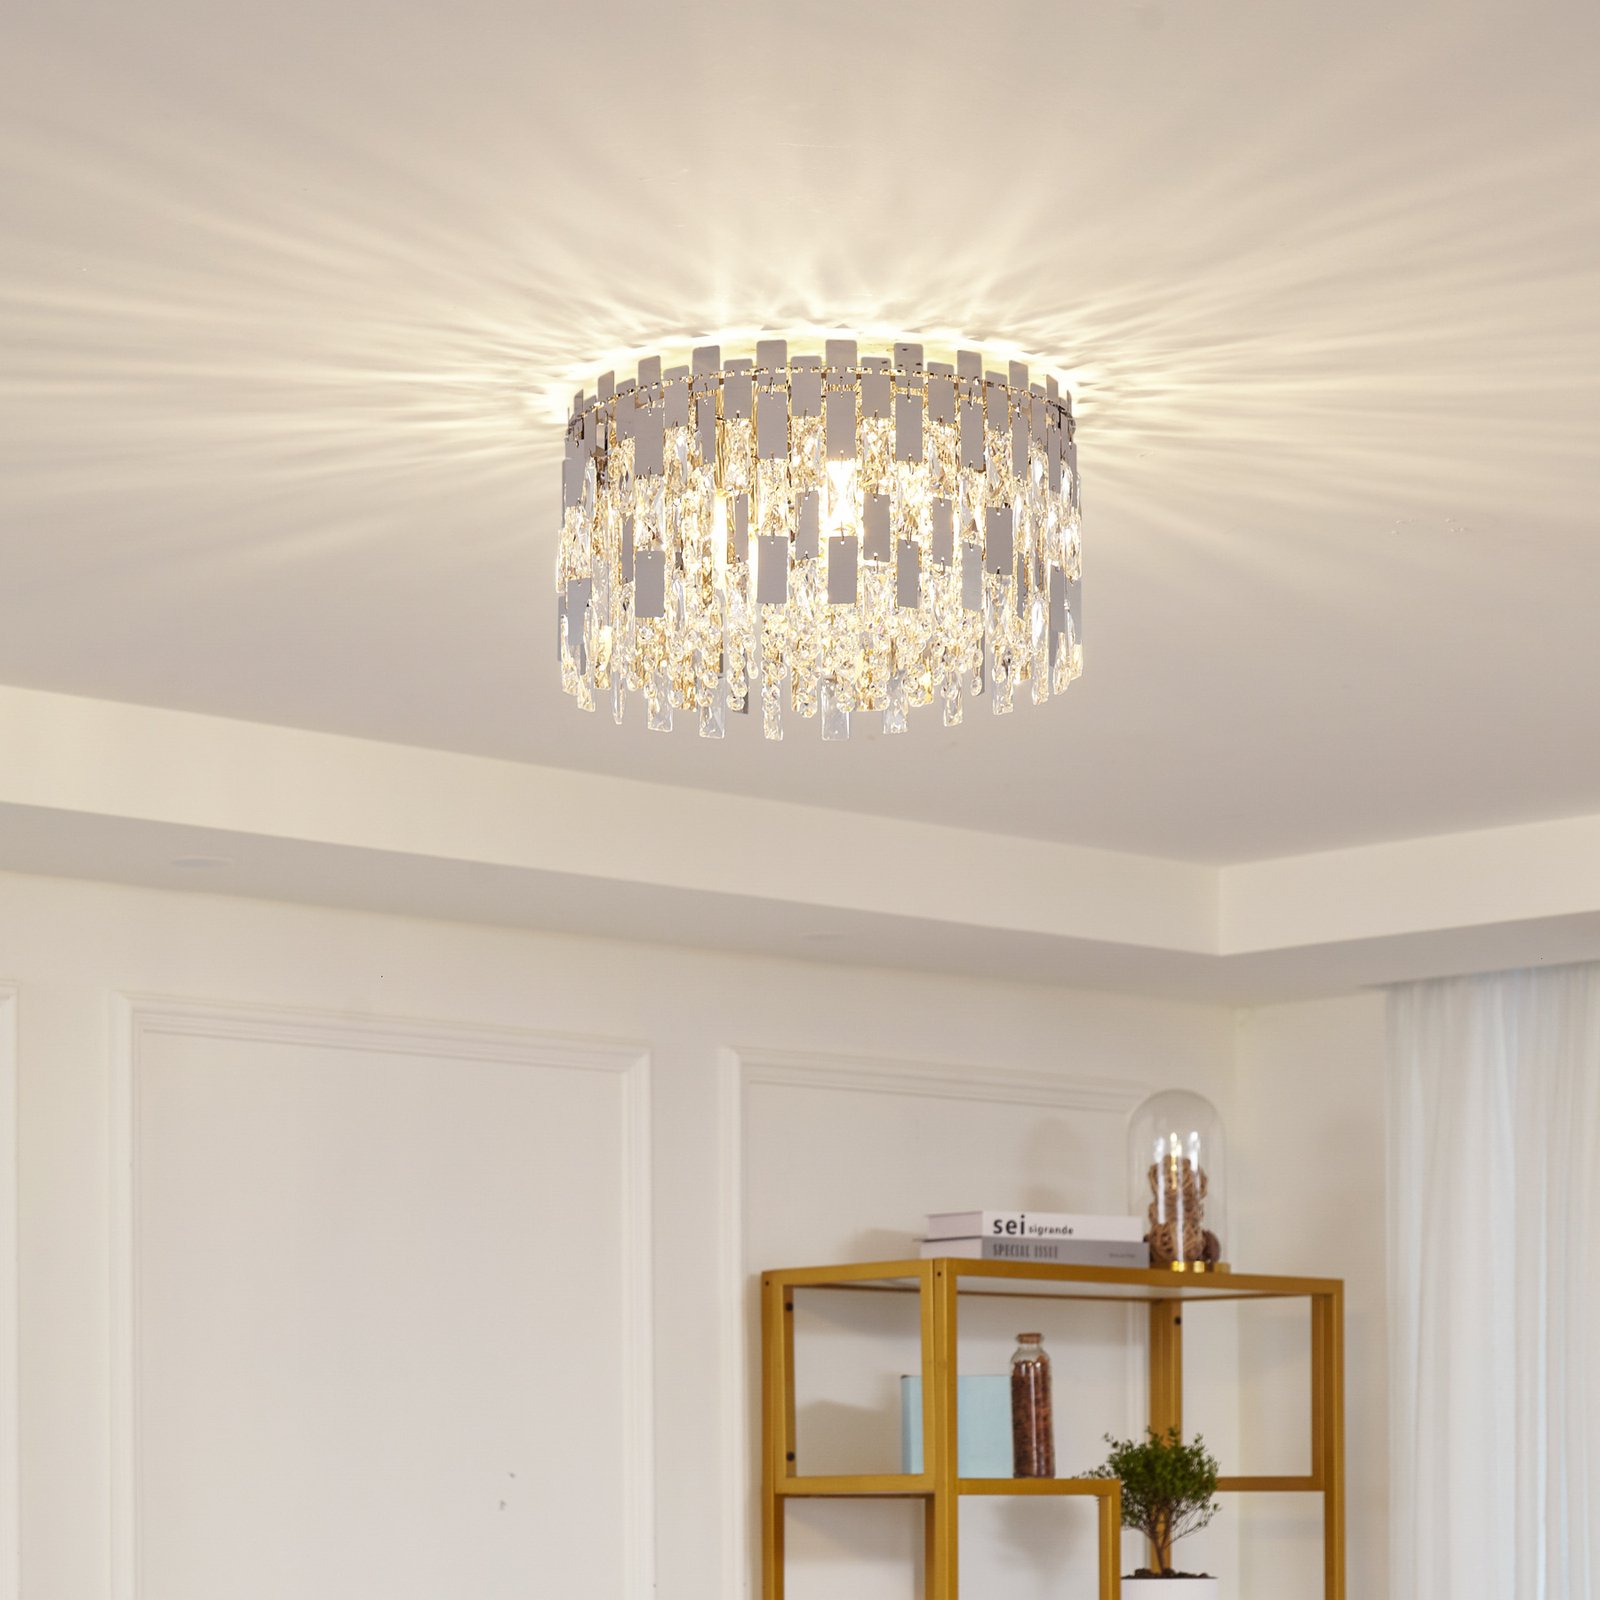 Lucande Arcan ceiling light, crystal glass, chrome